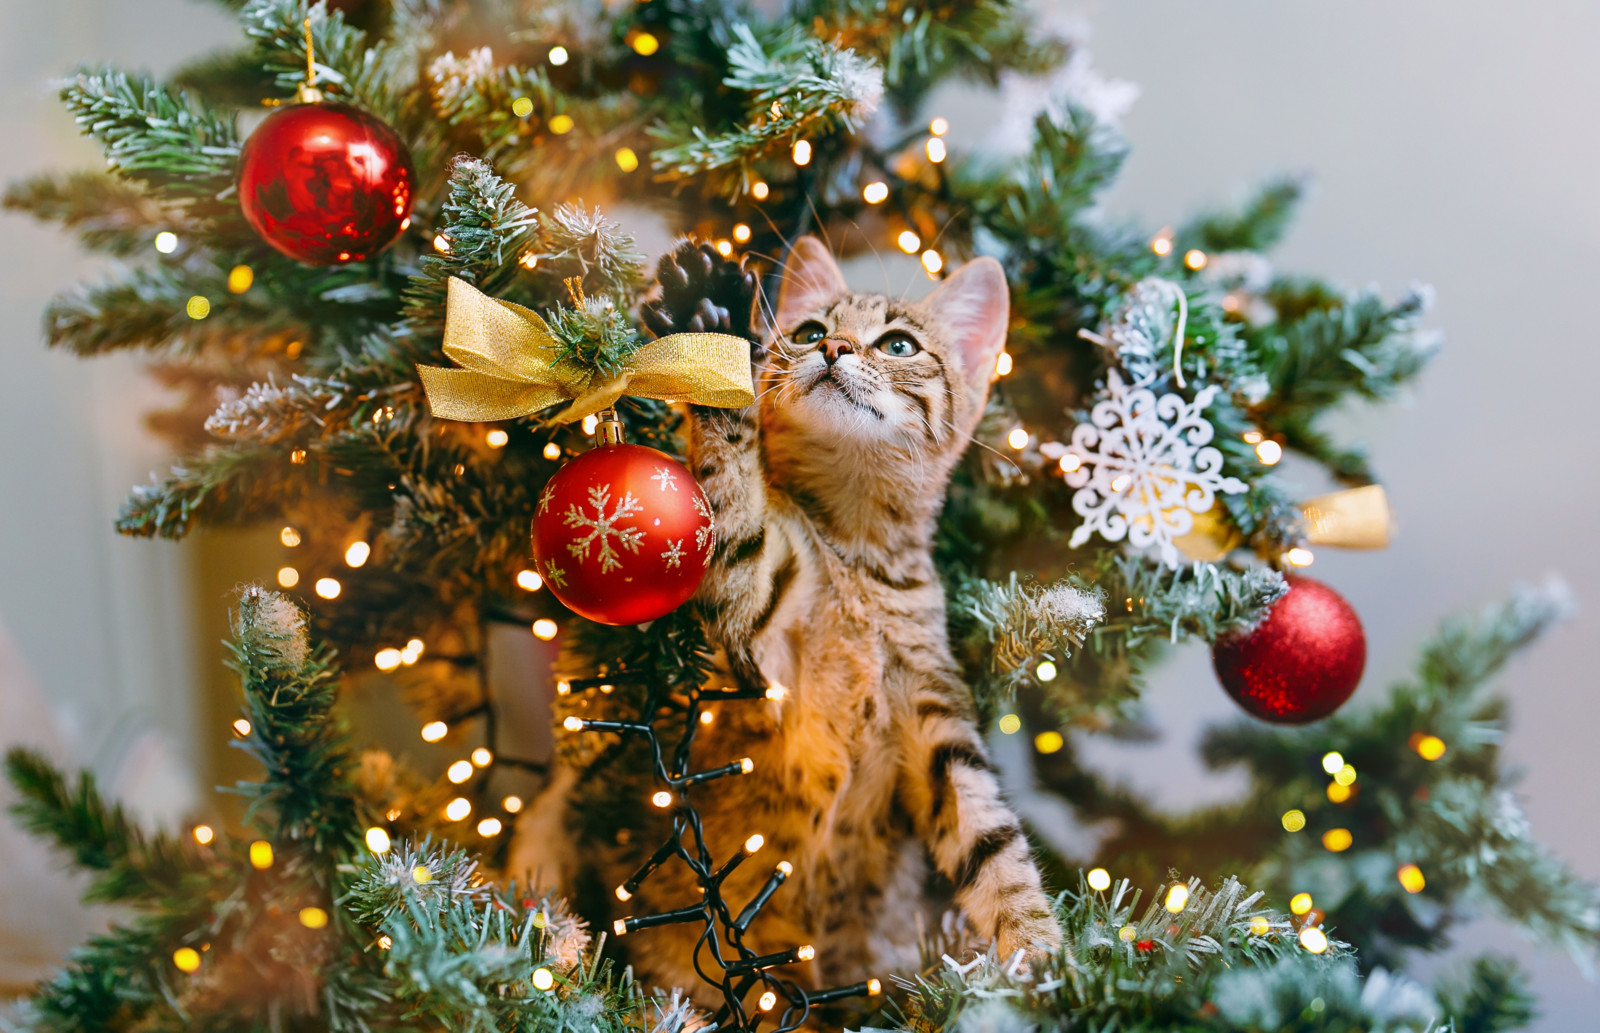 Katzen klettern gerne in Weihnachtsbäume, ein sicherer Stand kann ein Umkippen verhindern.